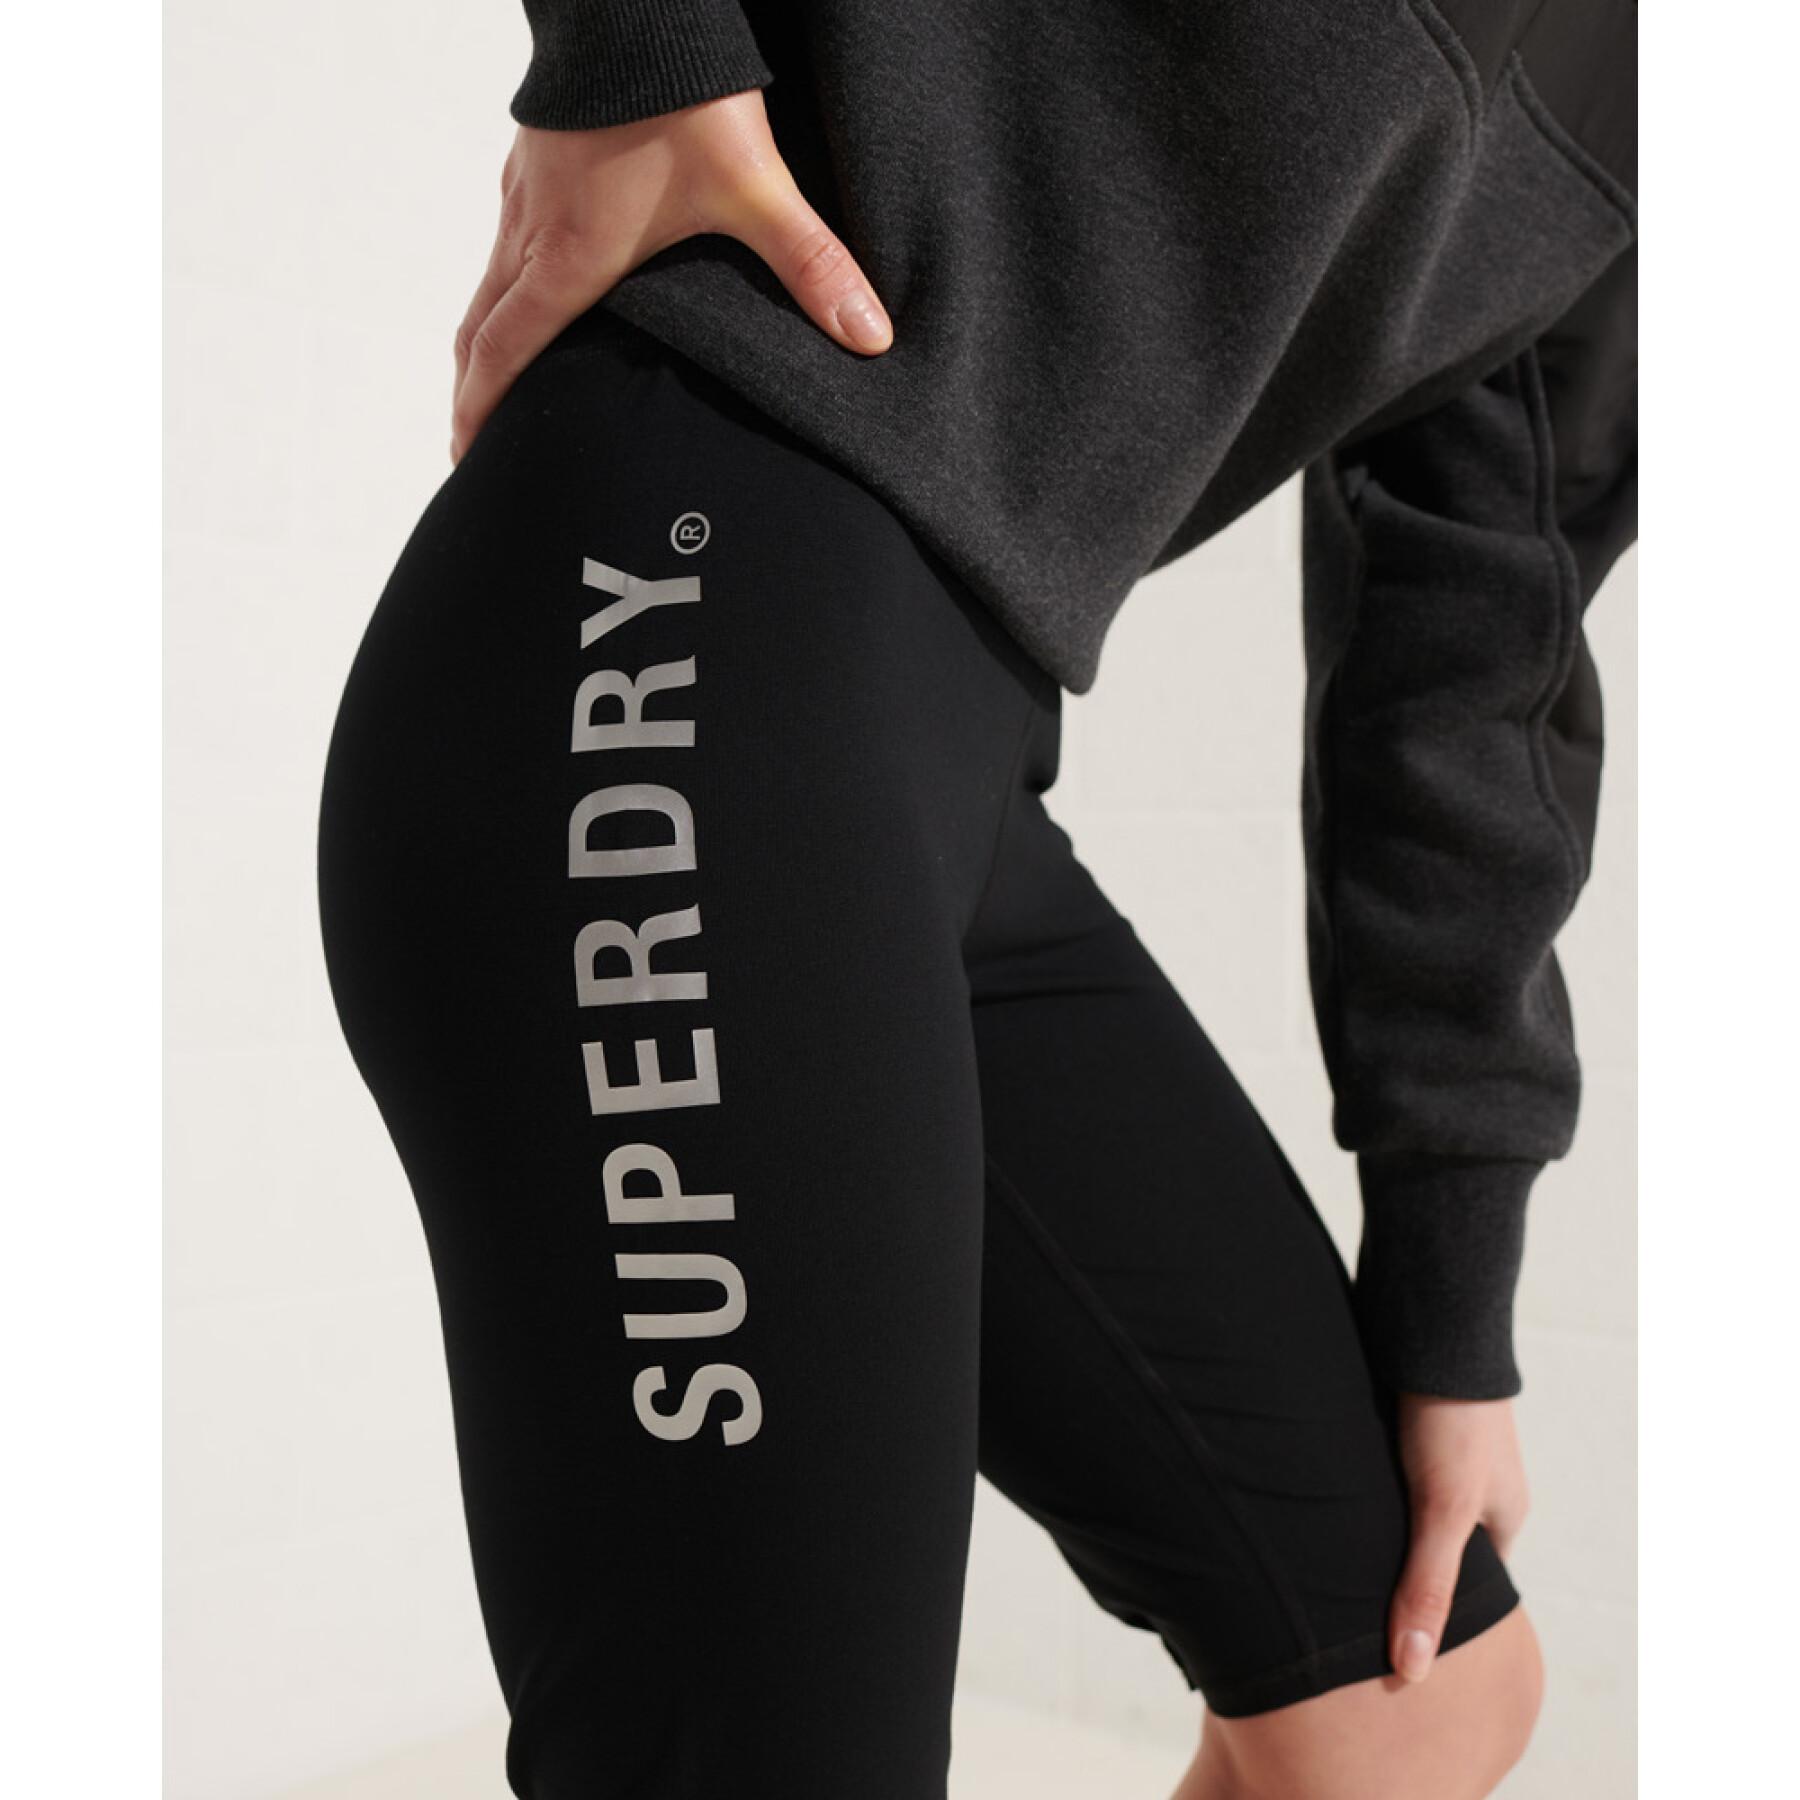 Radlerhosen für Frauen Superdry Corporate Logo